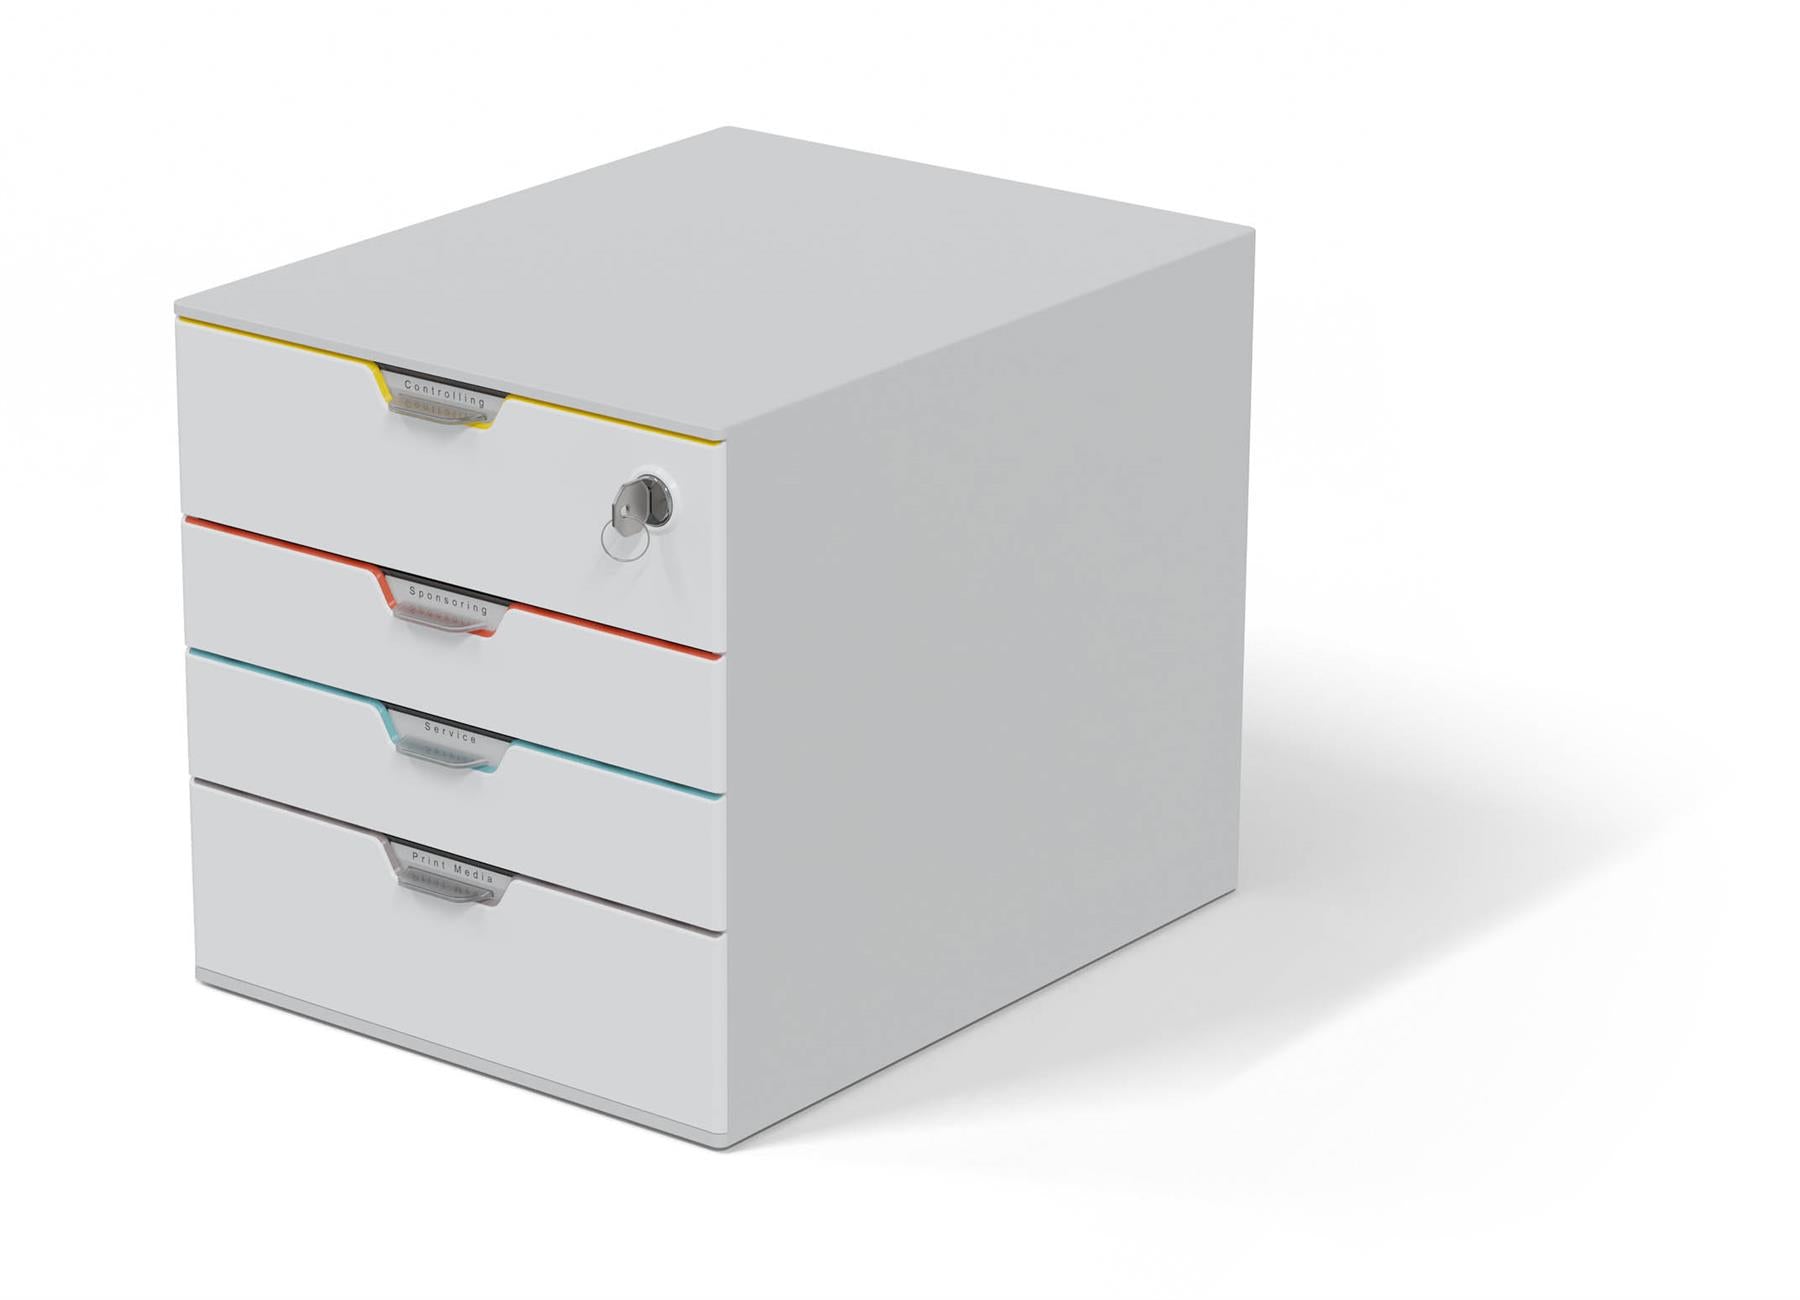 Durable VARICOLOR MIX SAFE Lockable Desktop Organiser 4 Drawer Storage | A4+